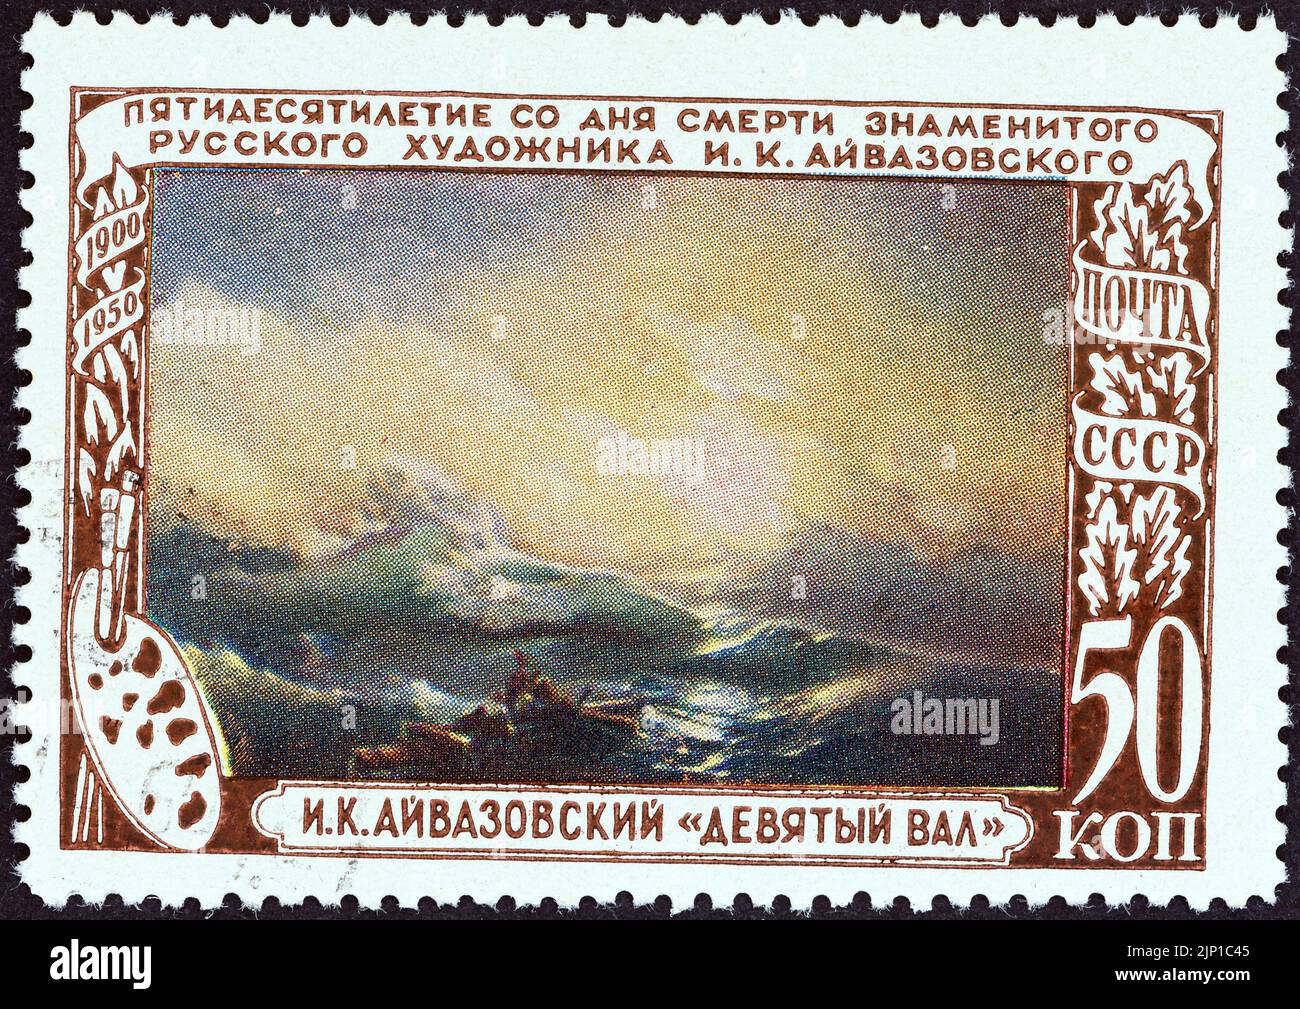 URSS - VERS 1950: Un timbre imprimé en URSS de l'édition "l'anniversaire de la mort 50th d'Ivan Konstantinovich Aivazovsky" montre la neuvième vague, 1850. Banque D'Images